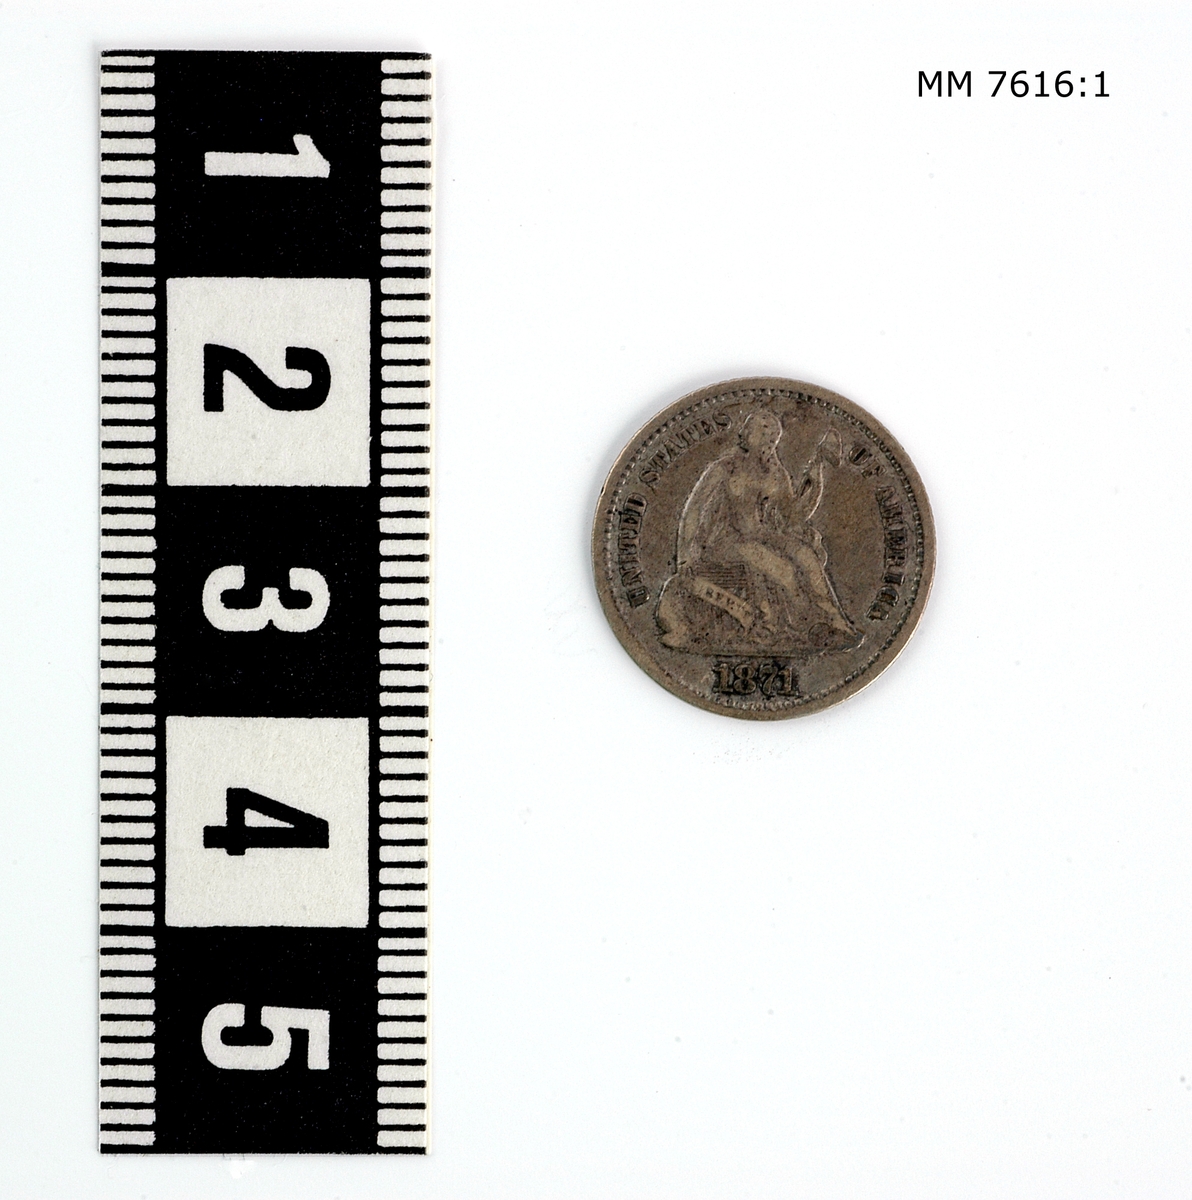 Mynt av silver, halfdime amerikanskt. Präglad på ena sidan: "Halfdime" på andra sidan: figur samt "United states of America 1871".